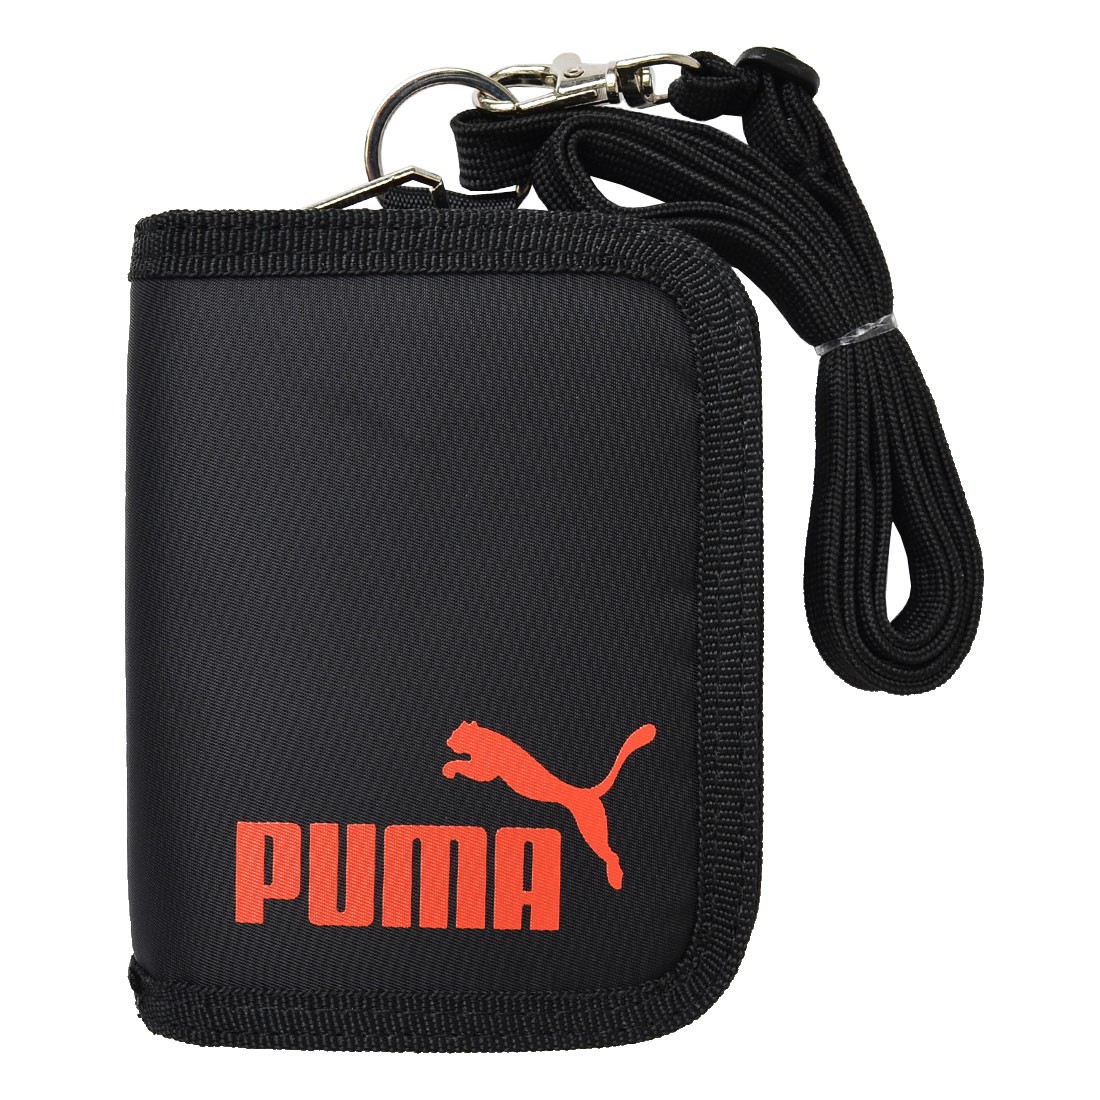 財布 PUMA プーマ 二つ折り財布 ストラップ付き 斜めがけ 紐付き PM242 小学生 バリバリ...